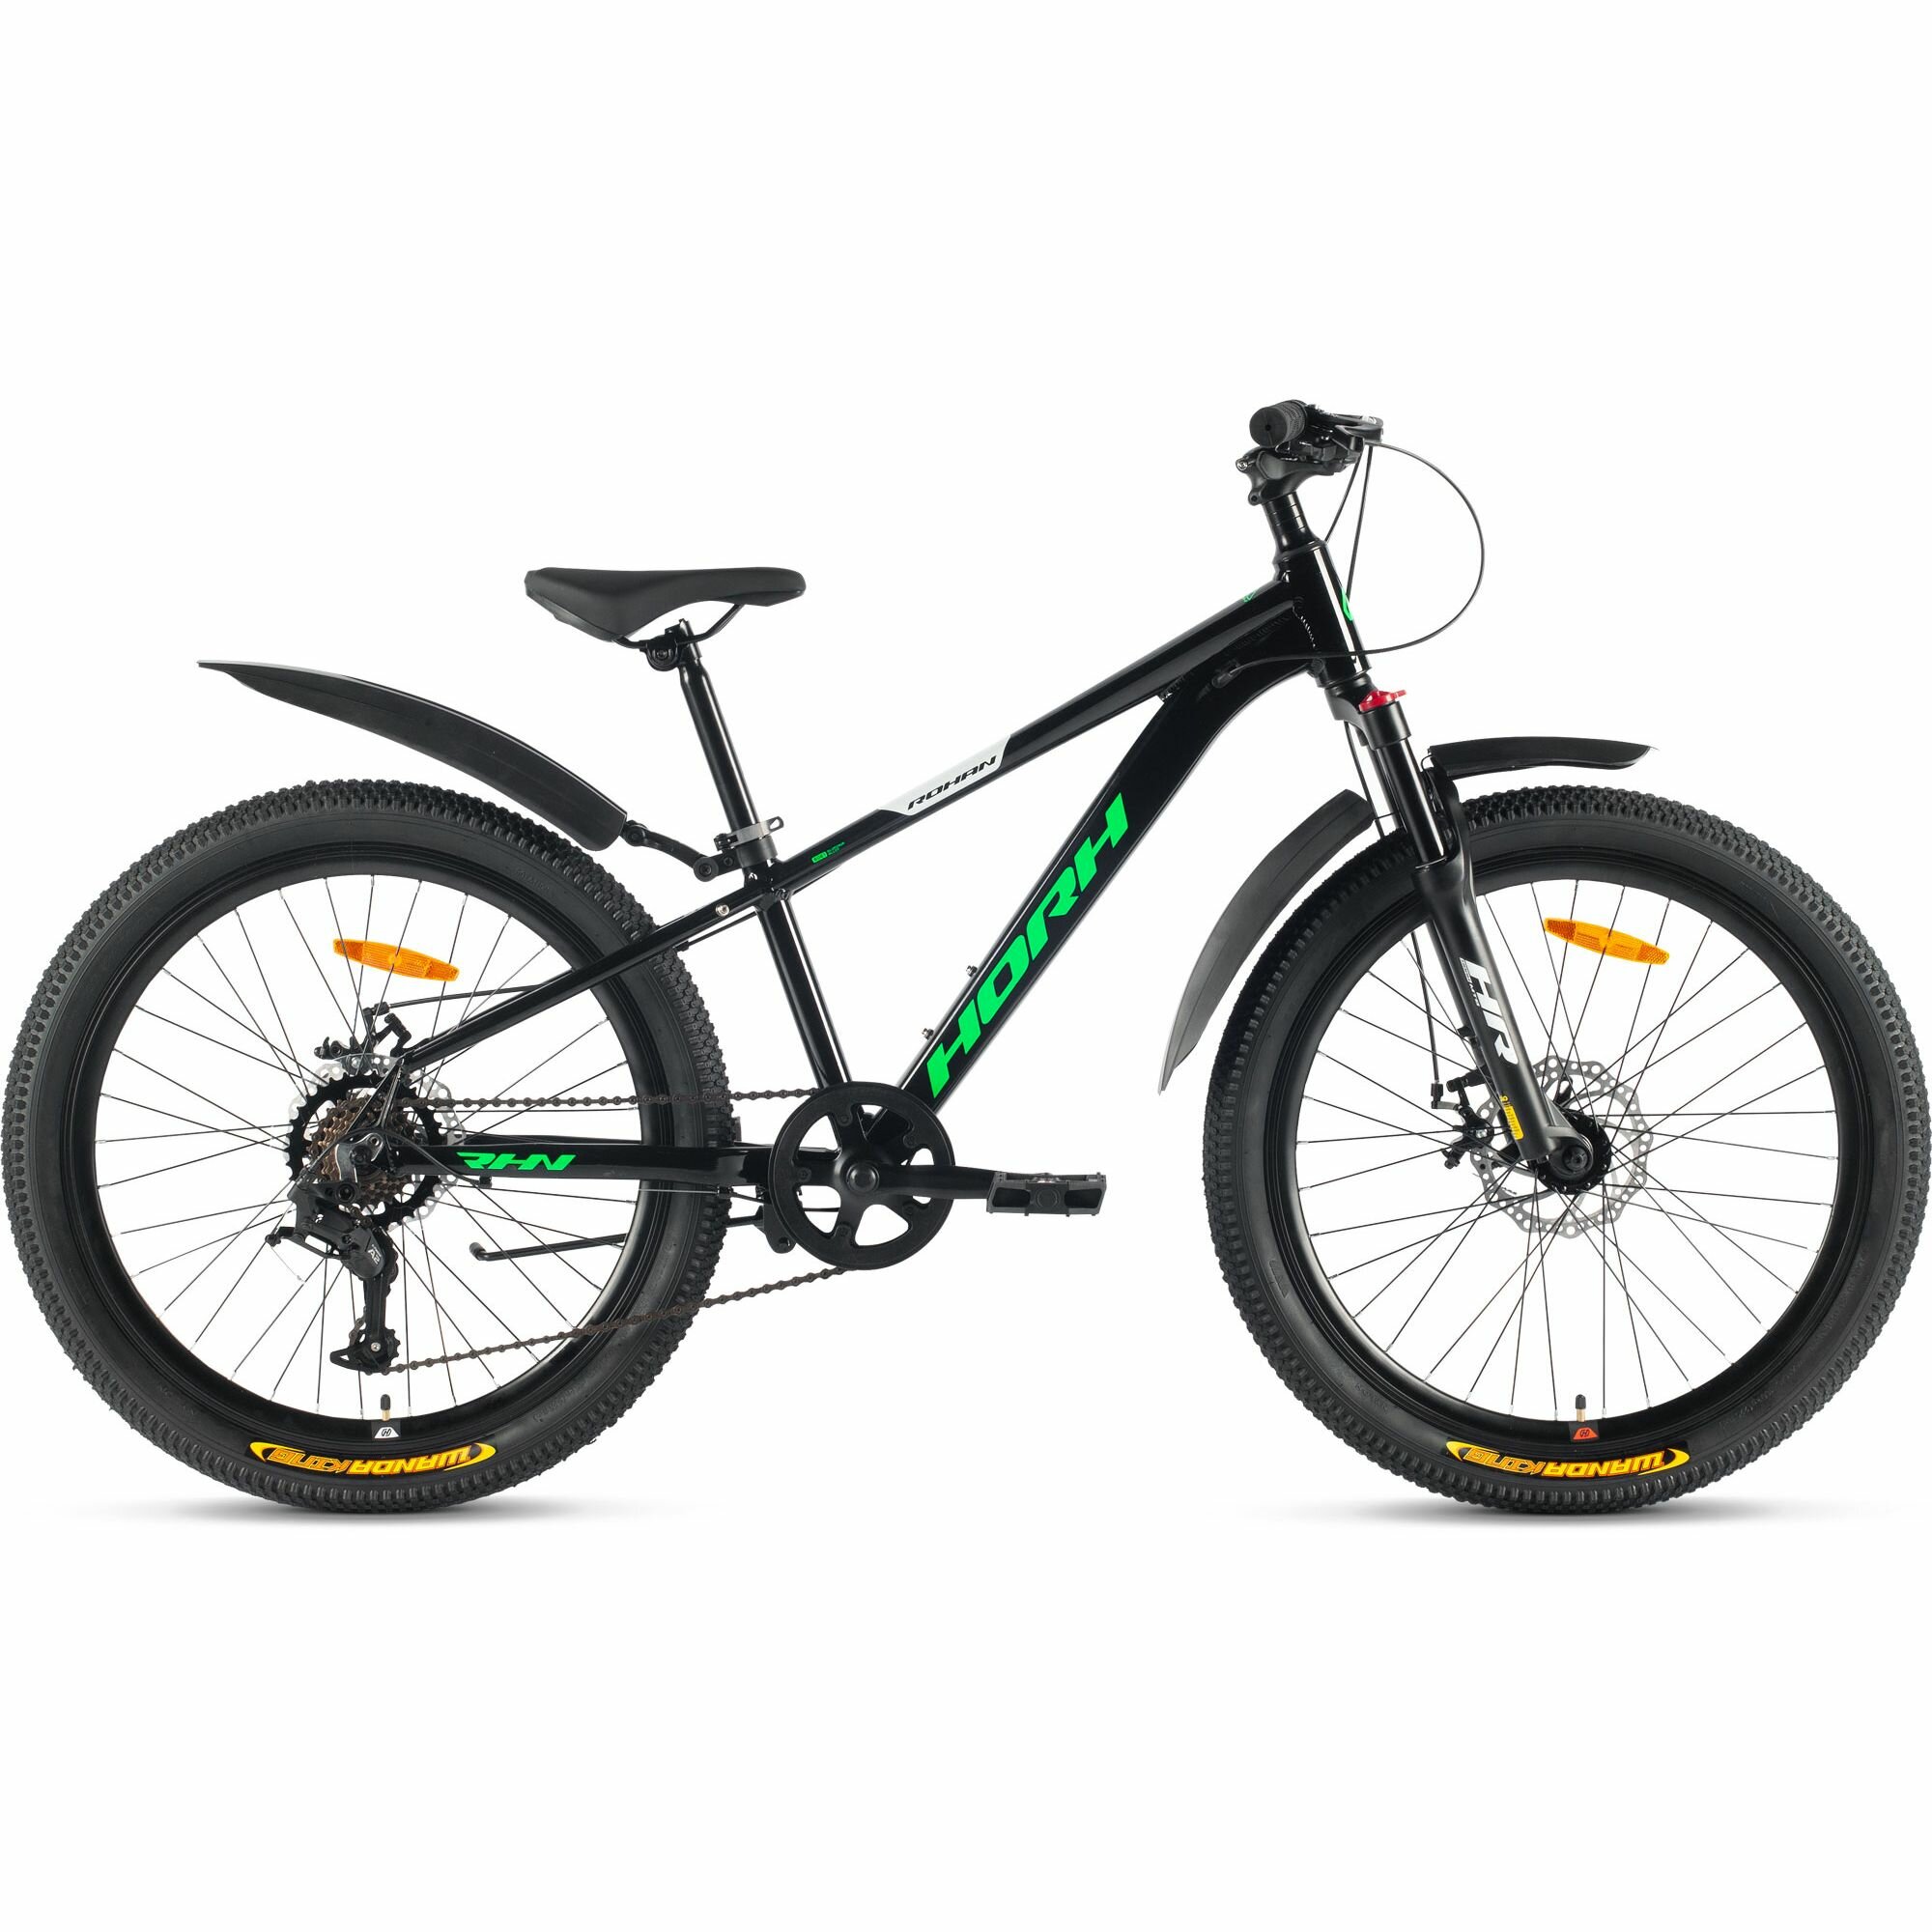 Велосипед горный HORH ROHAN RMD 24" (2024), хардтейл, детский, для мальчиков, алюминиевая рама, 7 скоростей, дисковые механические тормоза, цвет Black-Green-White, черный/зеленый/белый цвет, размер рамы 12", для роста 130-145 см